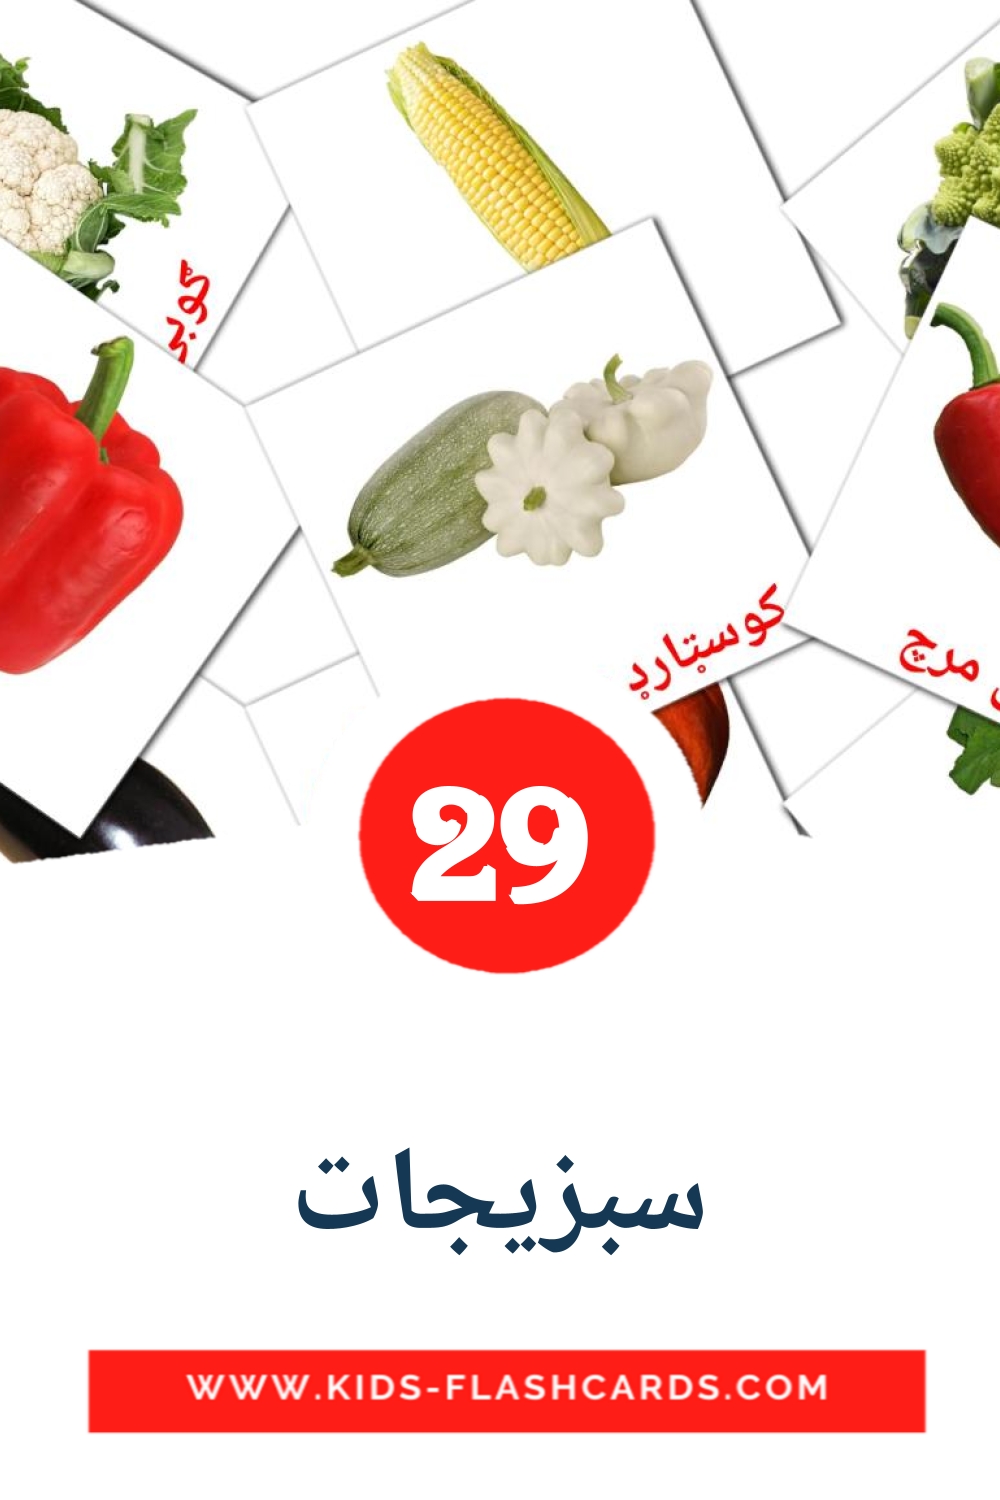 29 carte illustrate di سبزیجات per la scuola materna in pashto